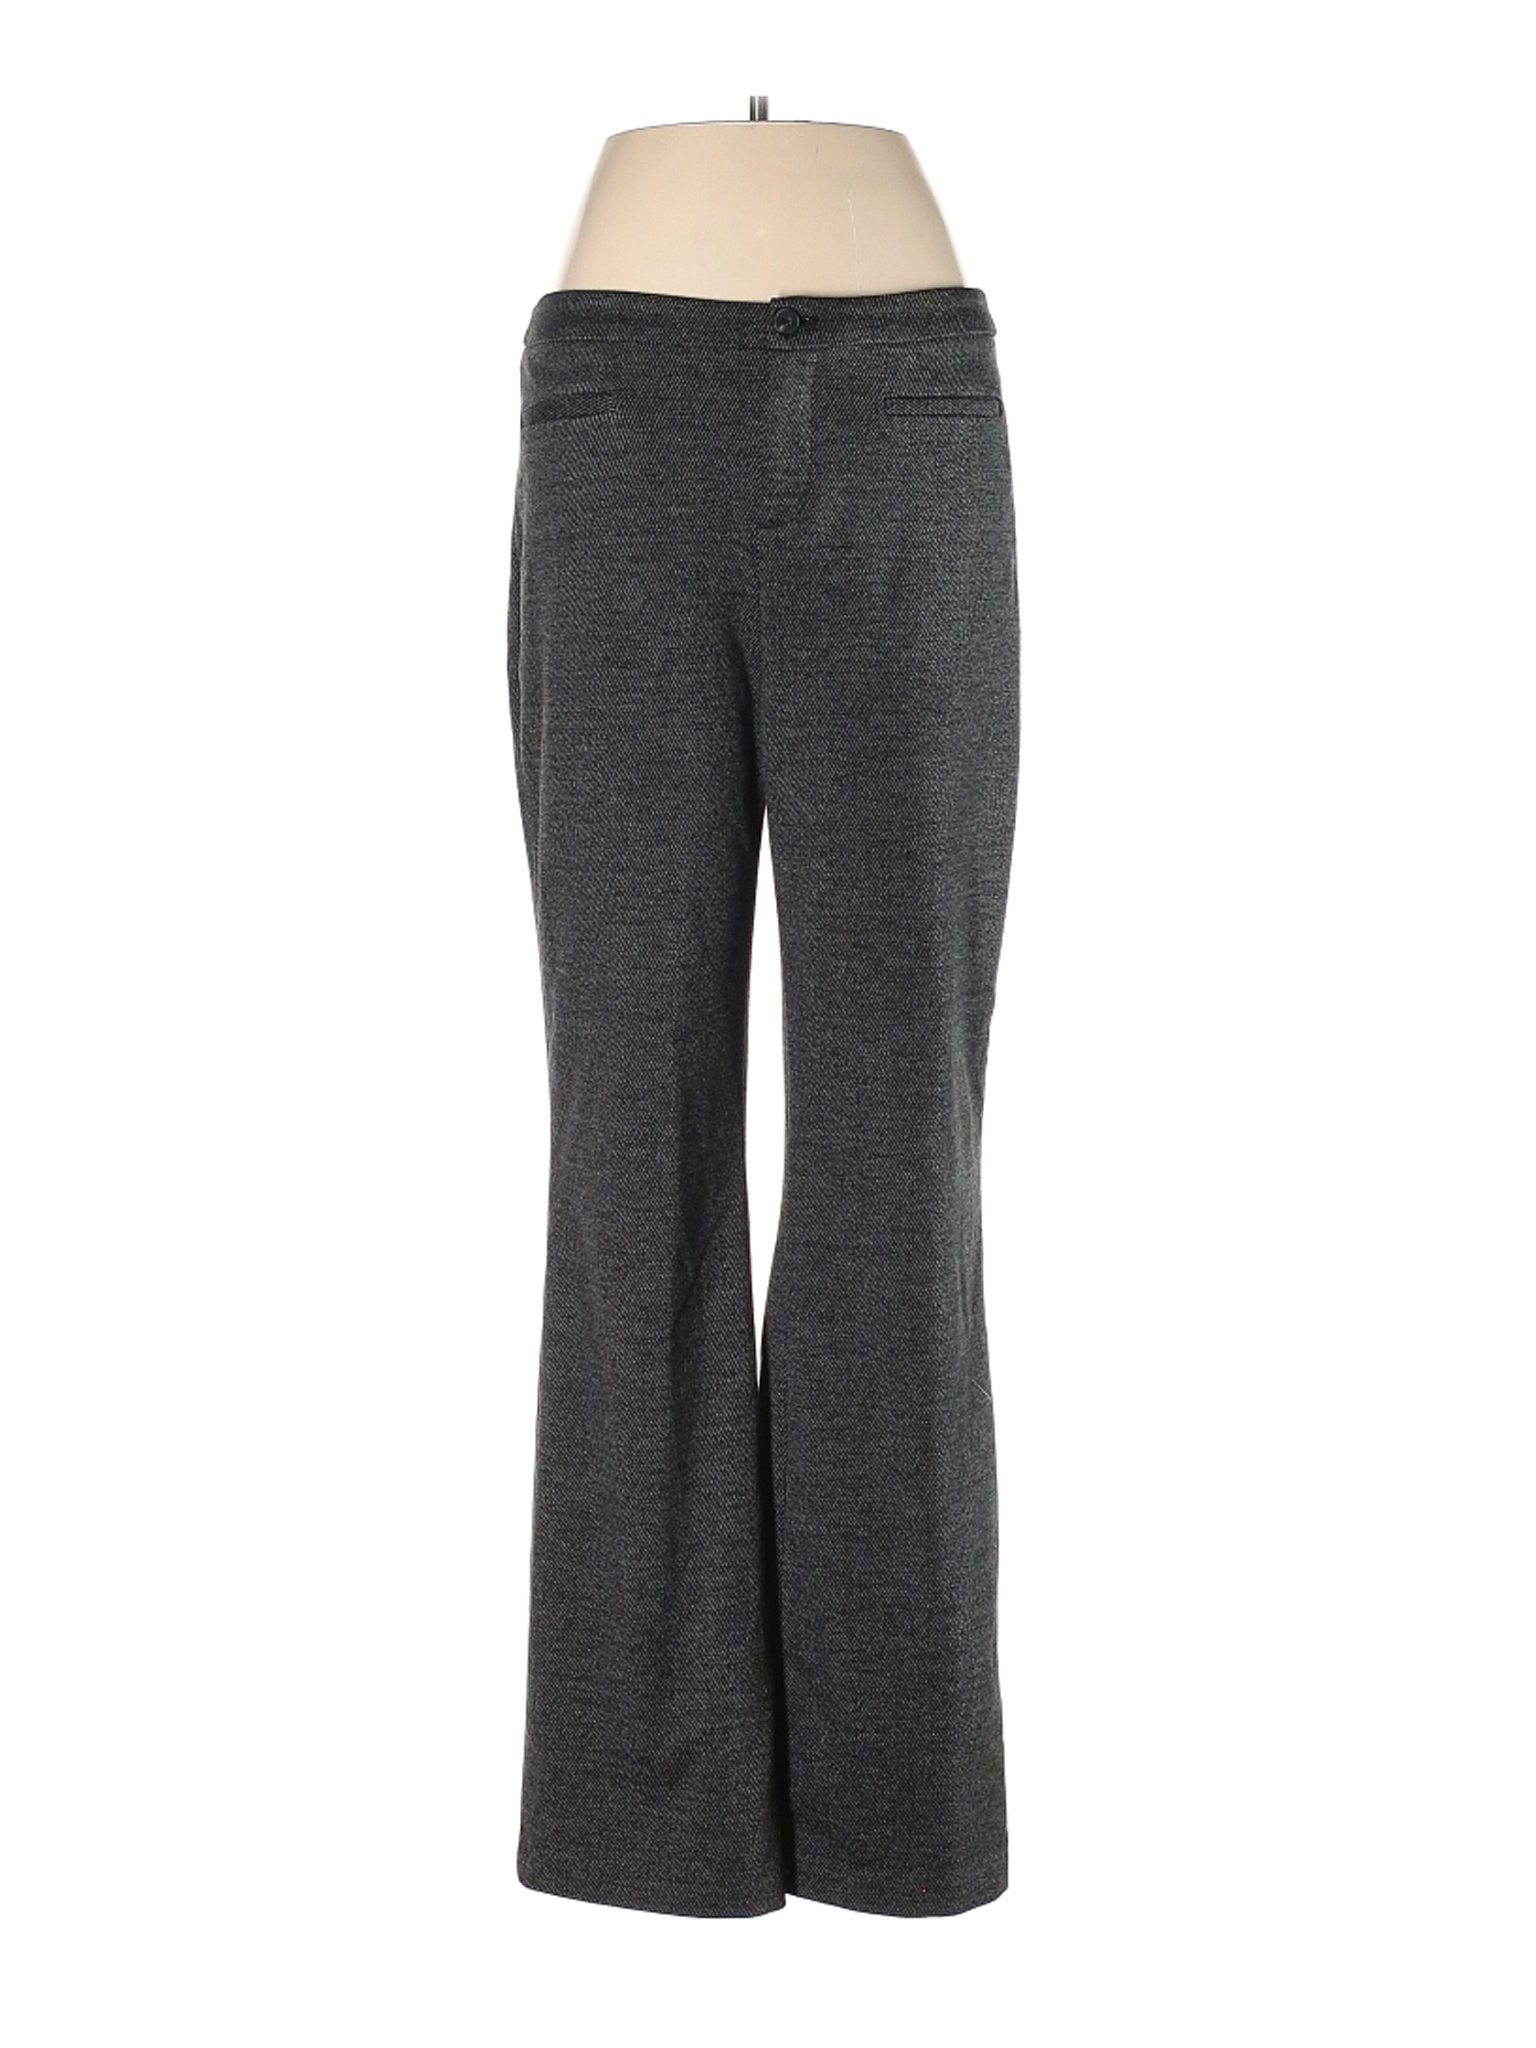 Coldwater Creek Women Gray Dress Pants 8 | eBay